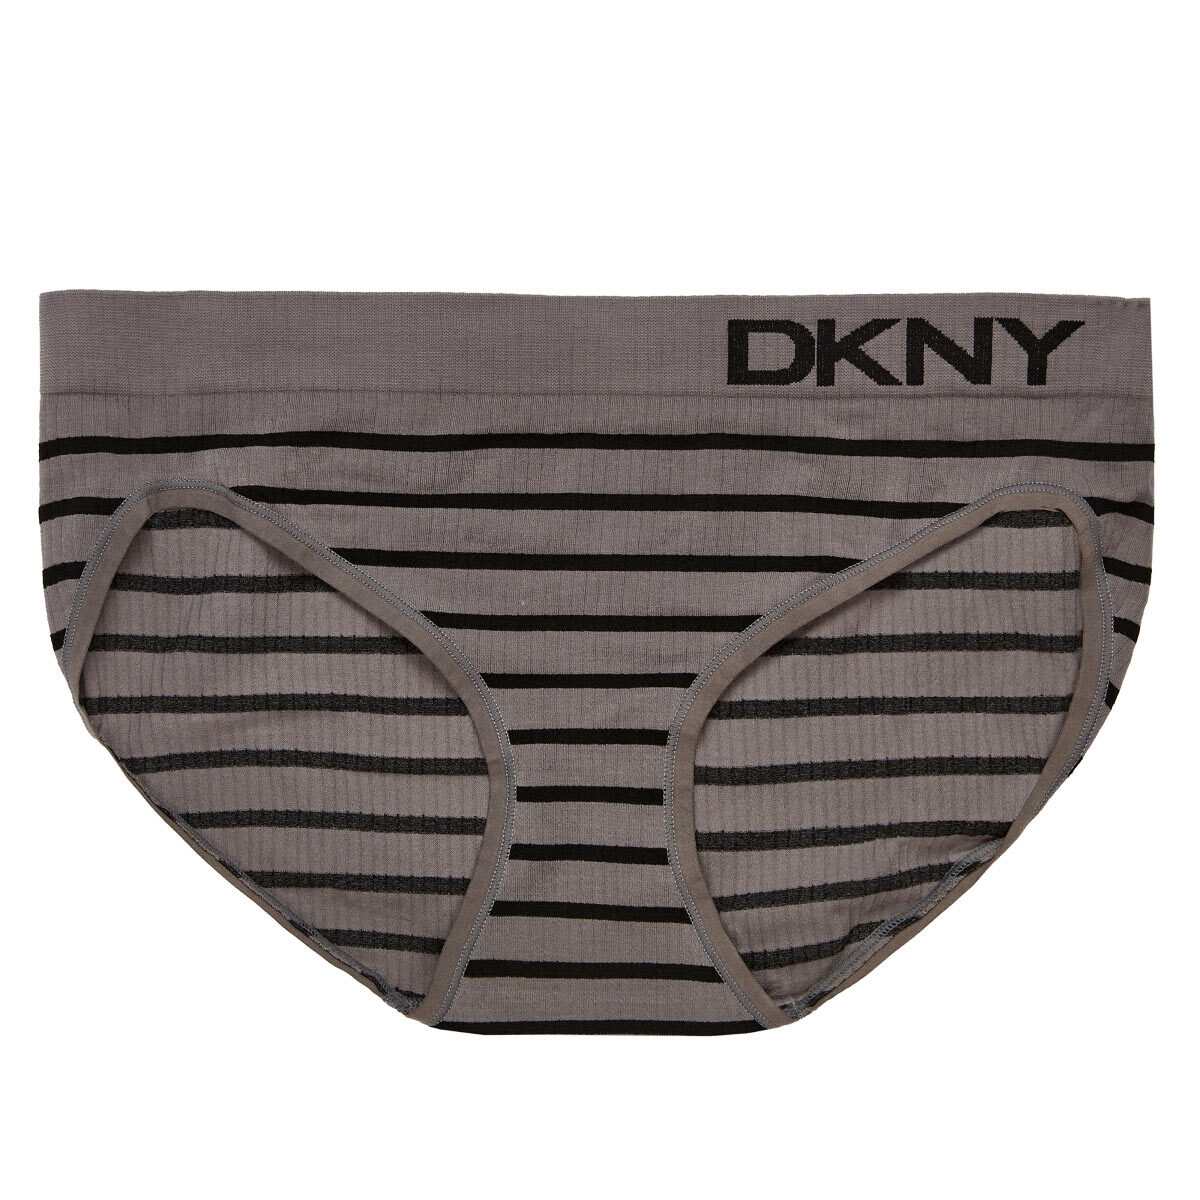 DKNY Women's Seamless Rib Knit 4 Pack Bikini Brief in Bla